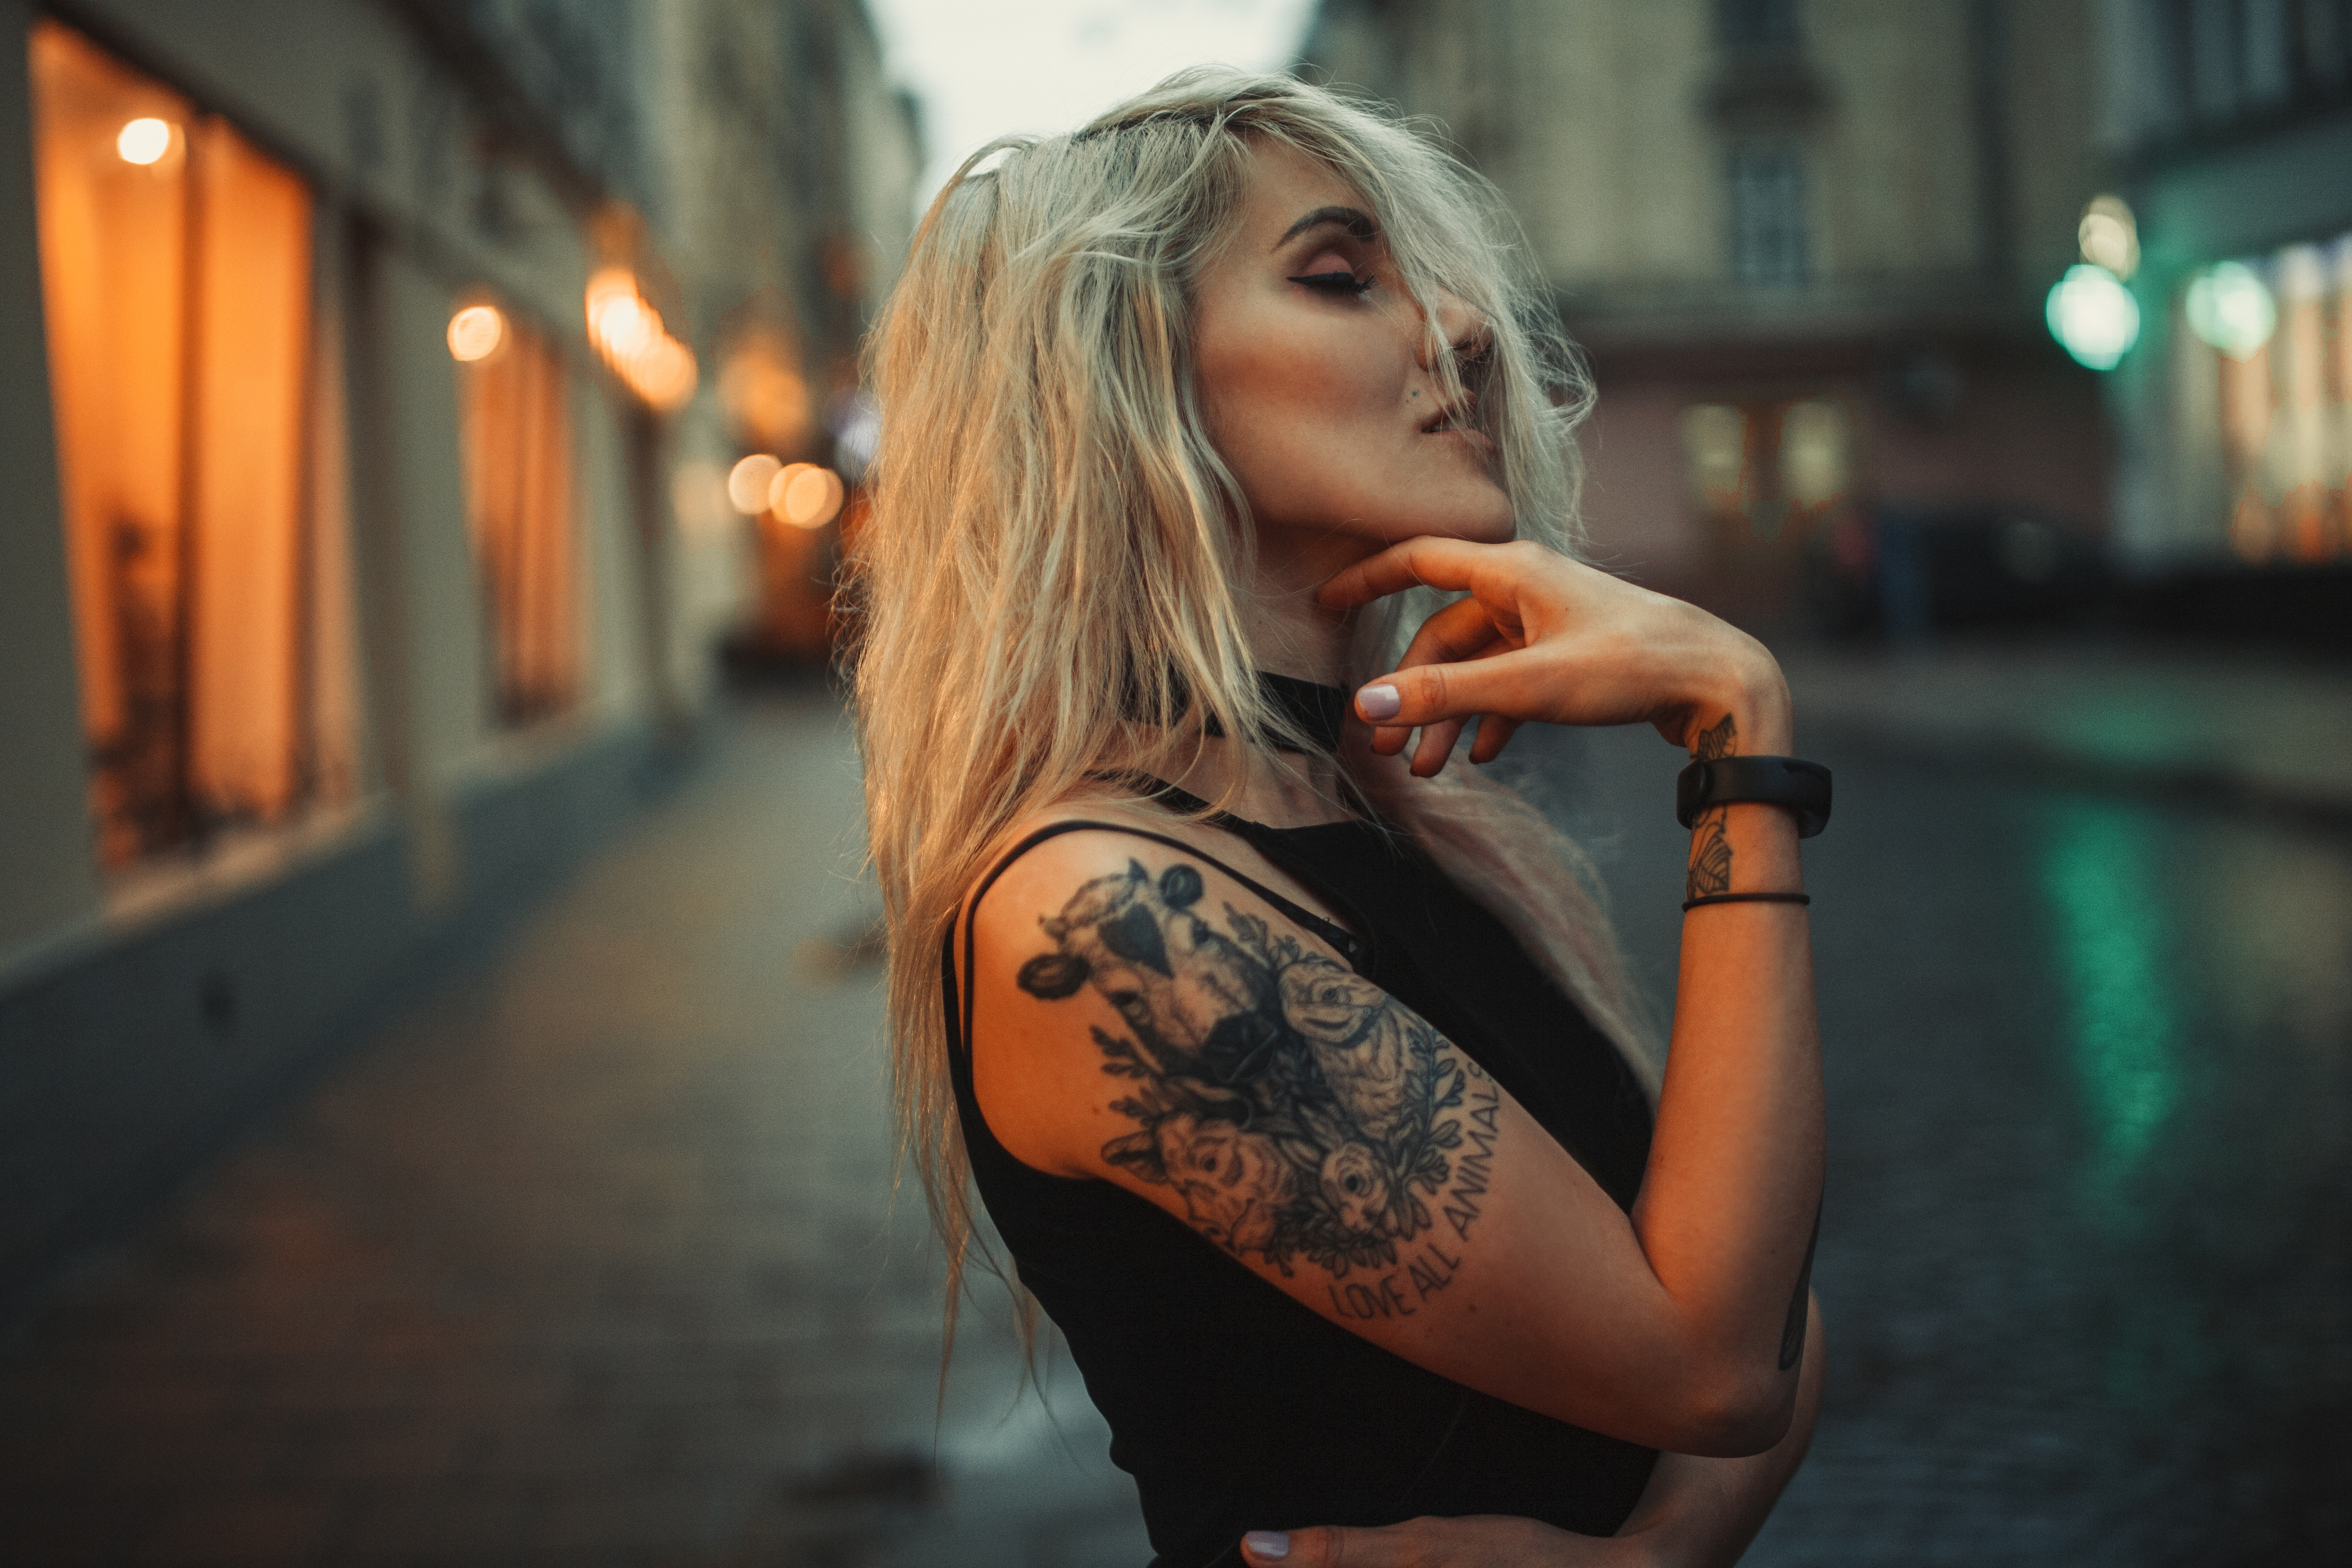 Tatuaż tymczasowy z własną grafiką to unikalny sposób na wyrażenie siebie